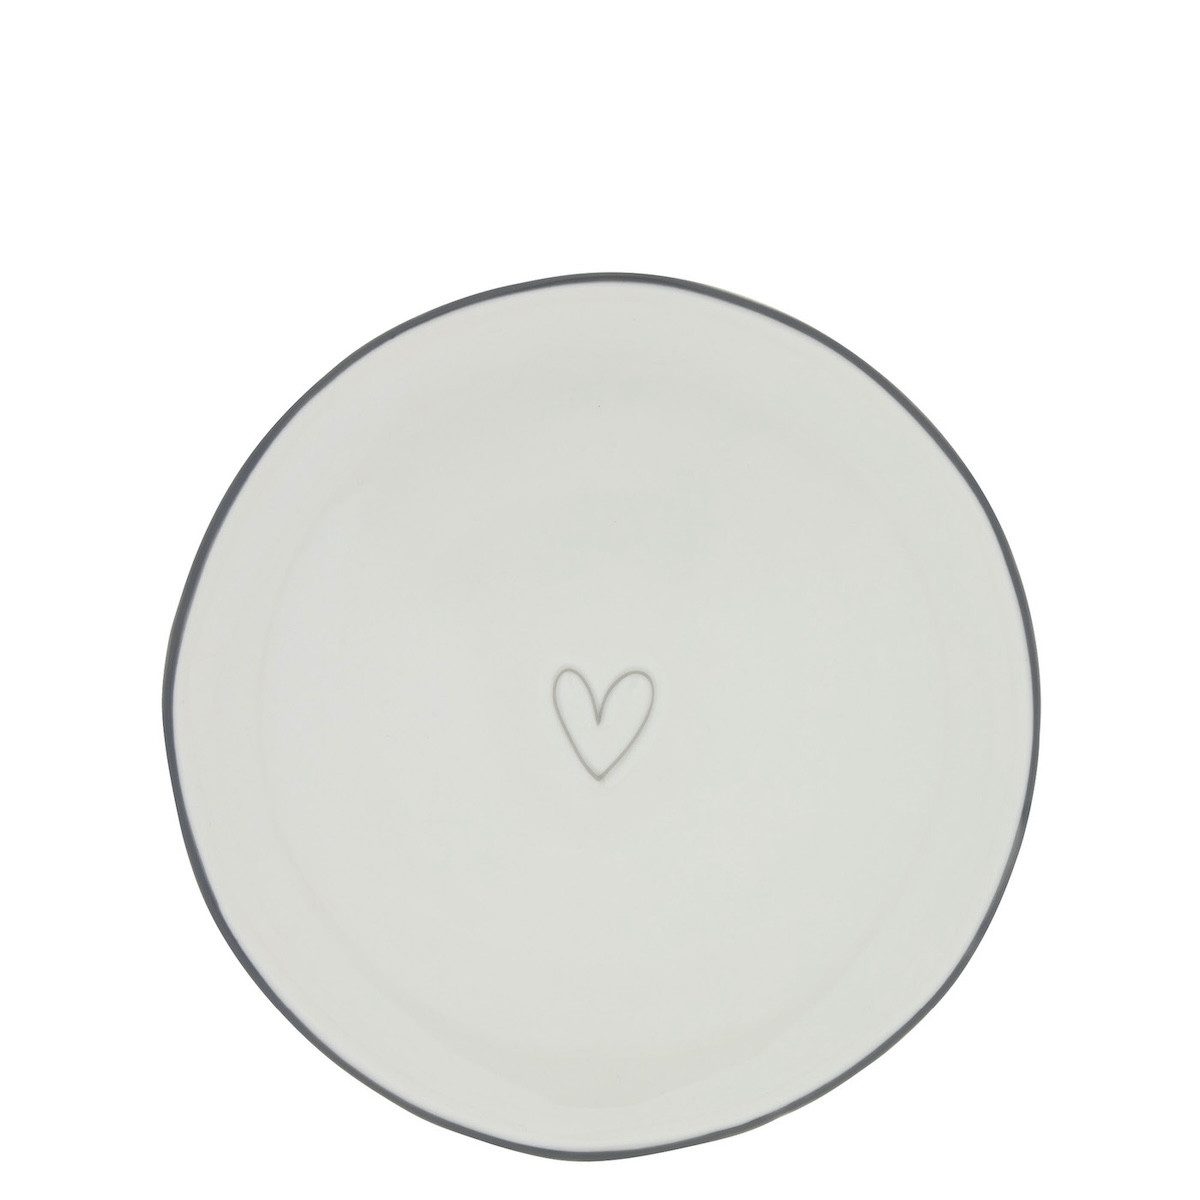 Bastion Collections Kuchenteller Kuchenteller Heart Keramik weiß grau D19cm